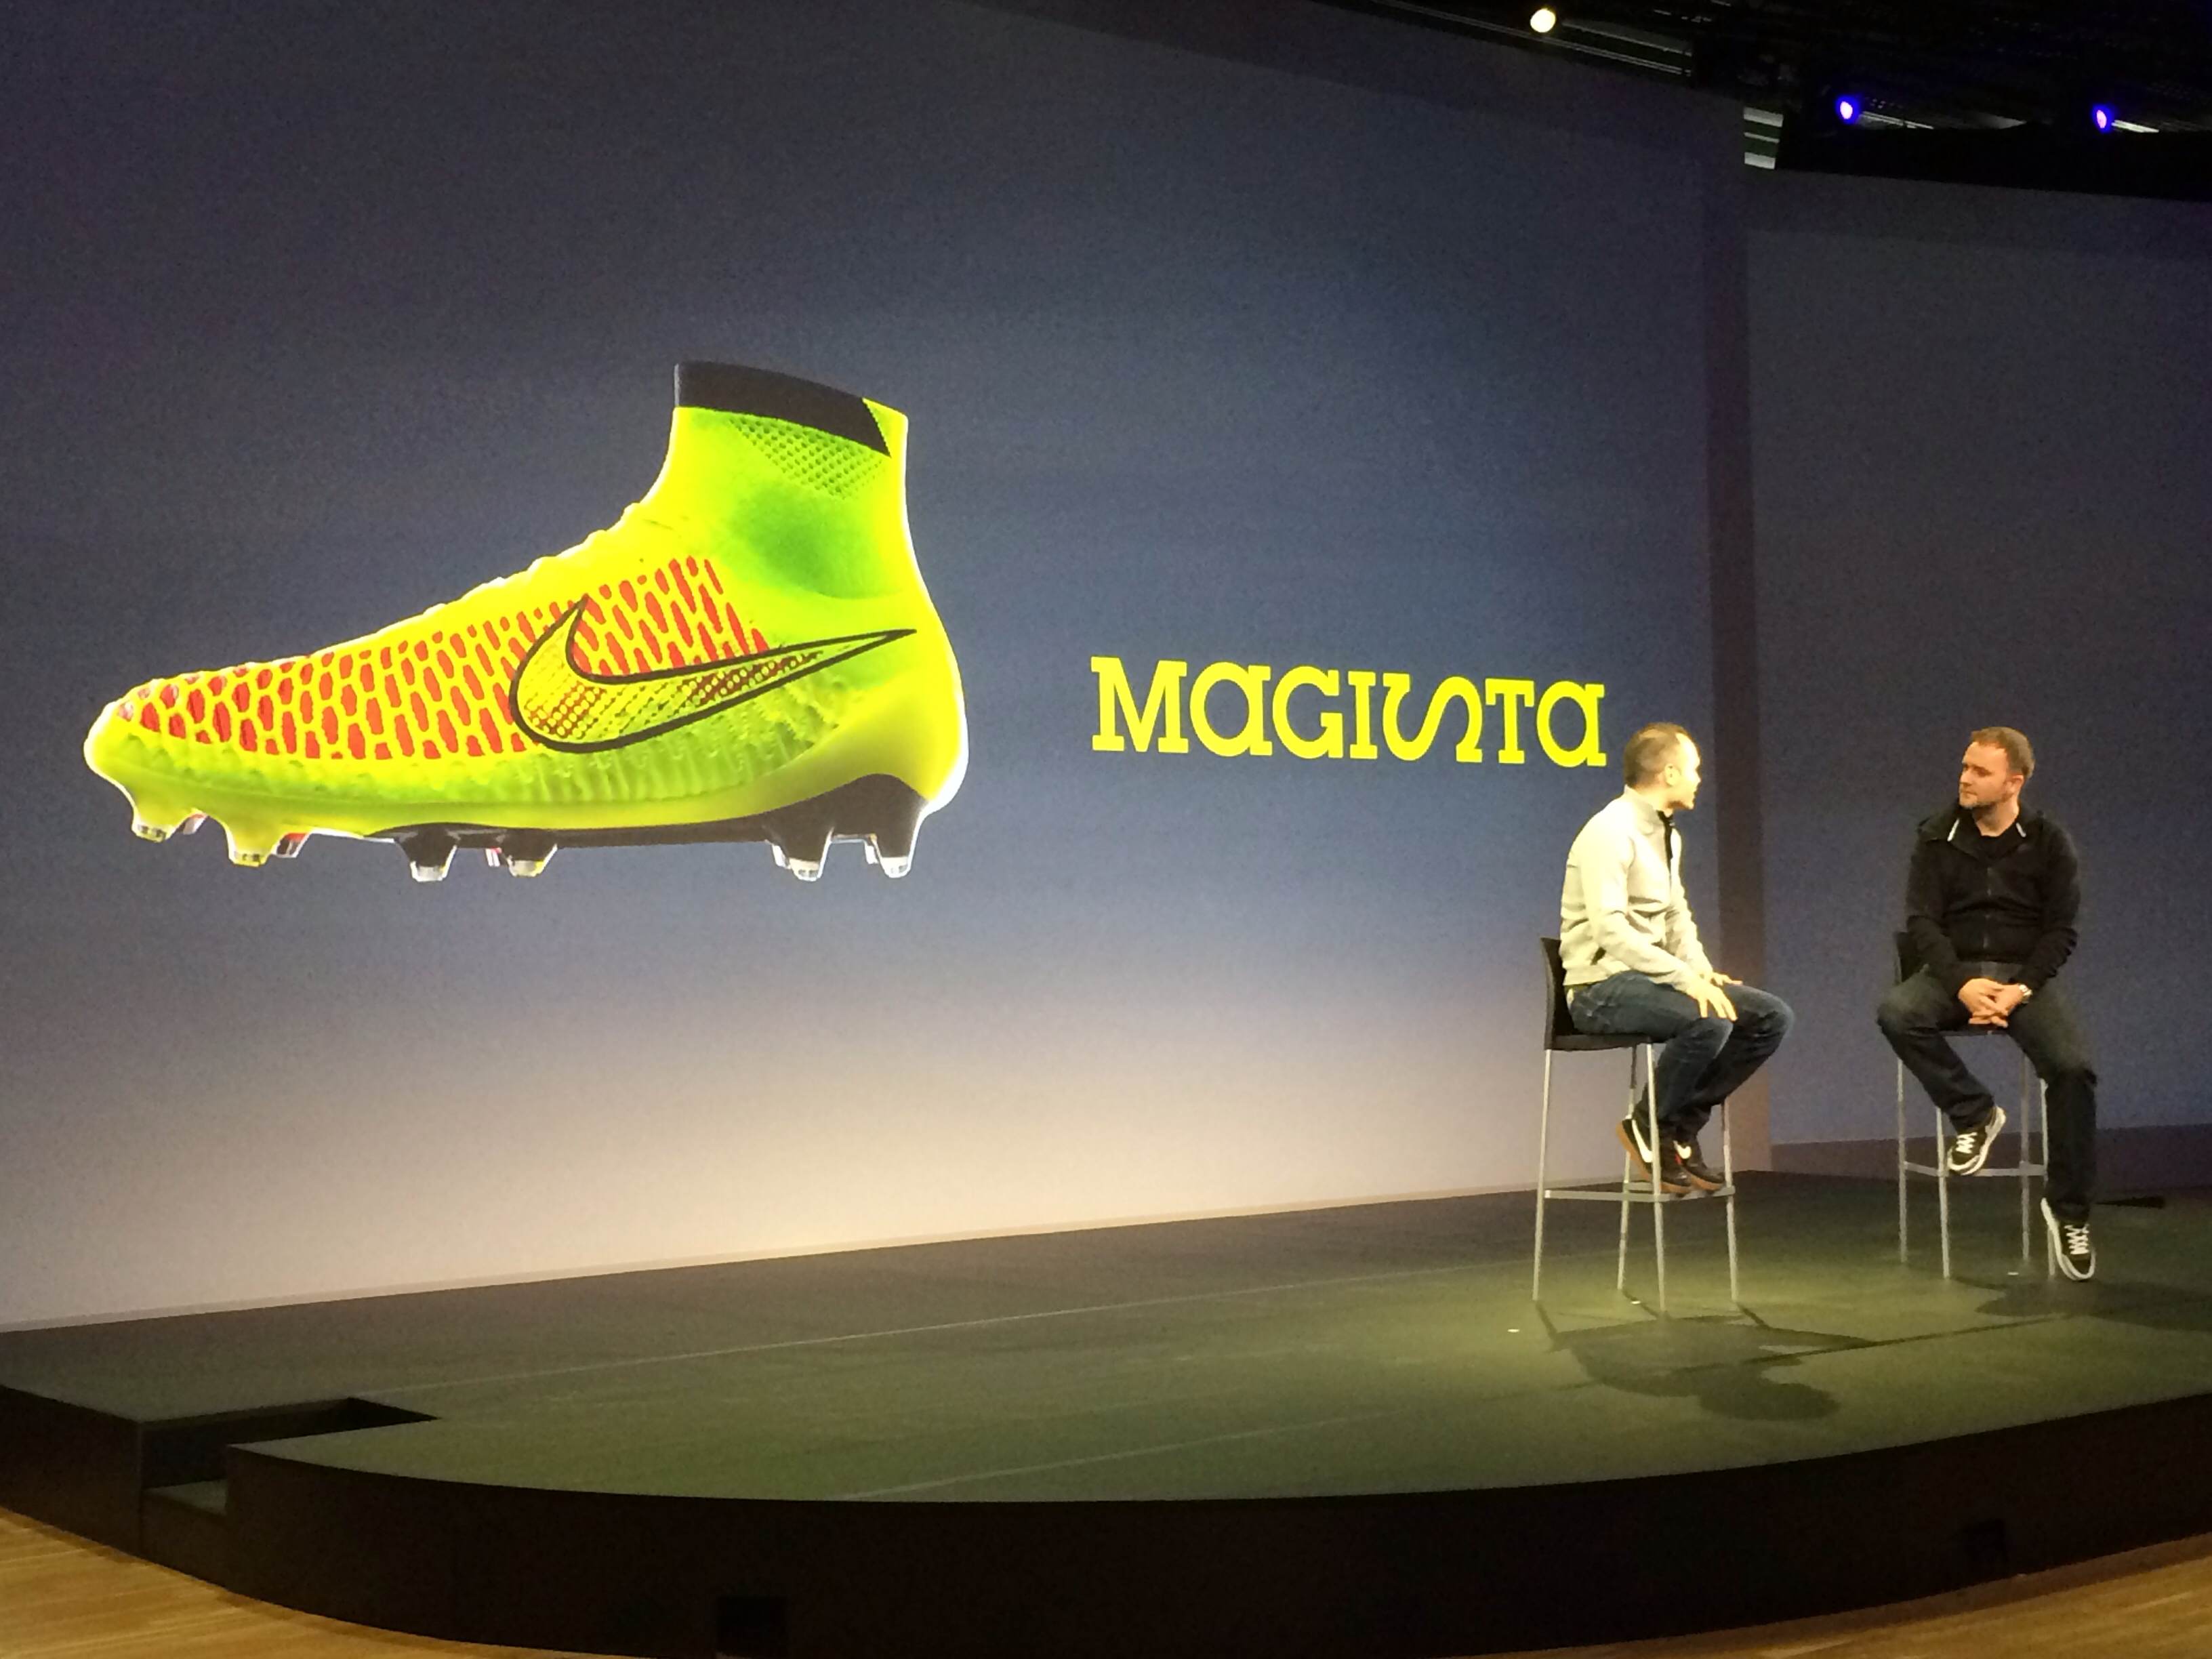 革新的な ブーツ型 のスパイク Magista マジスタ が新登場 イニエスタ 靴下のような感覚 足がボールにより近付く サッカーキング